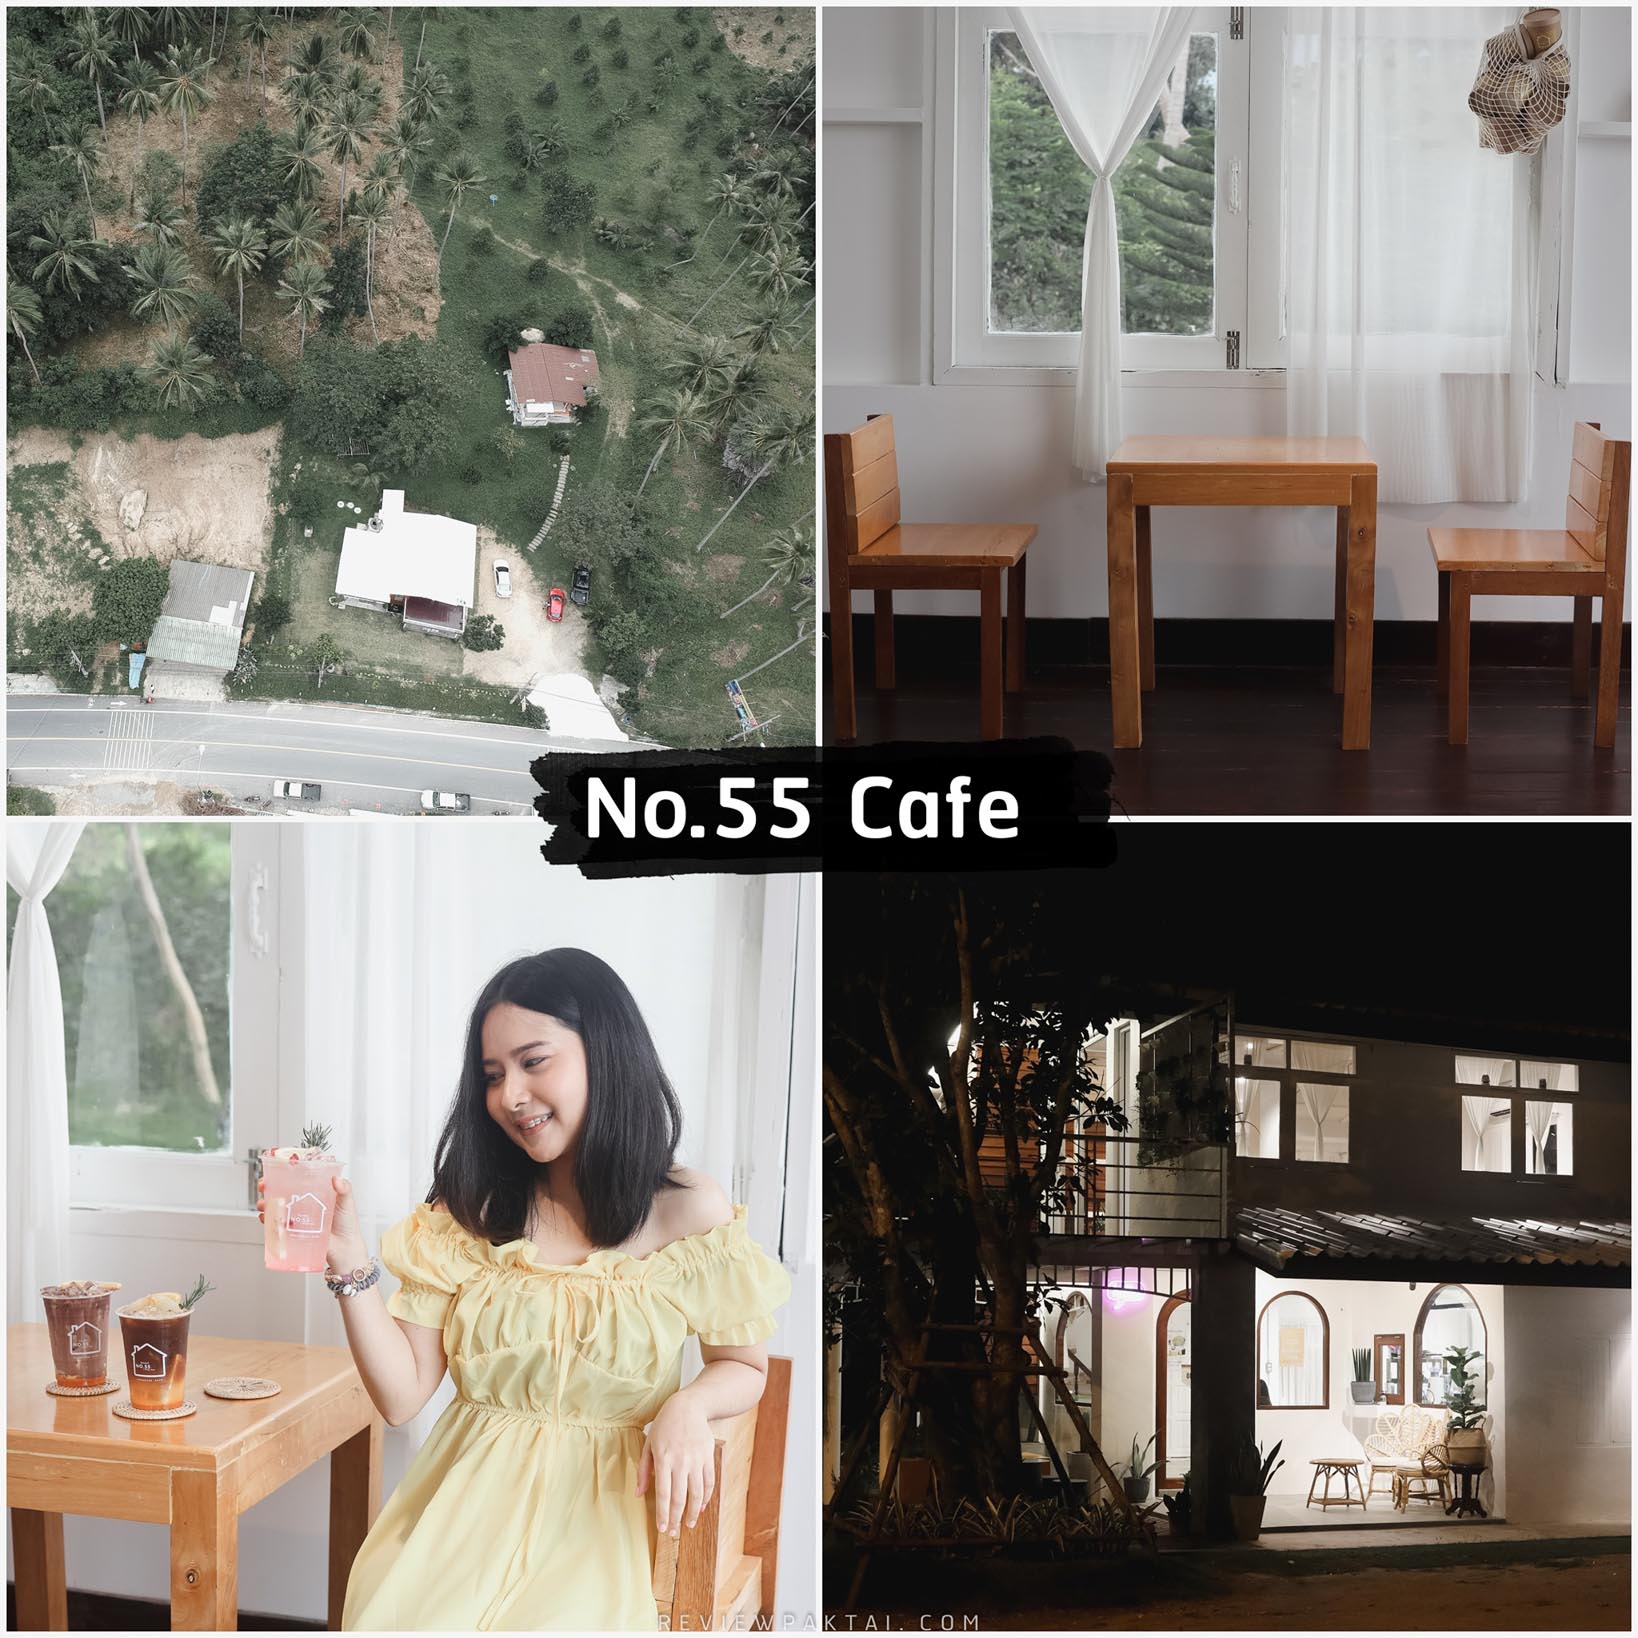 No.55-Cafe -คาเฟ่เปิดใหม่ริมทะเลขนอม-สไตล์มินิมอล-สีขาวล้วนนน--ที่นี่ชื่อว่า--บ้านเลขที่-55--หรือ--No.55-Cafe--จุดเด่นคือร้านโทนสีขาวเนี้ยบๆสไตล์มินิมอล-แบบมินิมอลสุดๆ-บรรยากาศดีชิวๆริมทะเล-บอกเลยว่าเด็ดดด-รีวิวกันเลยในส่วนของเครื่องดื่มอาหาร-อร่อยเนี้ยบ-ทั้งช็อกโกแลตส้ม-หรือชื่อเมนูของทางร้าน-Sixy.thirty-6.30-อะแค่ชื่อก็เด็ดไม่ธรรมดาแว้ววว-กาแฟส้ม-กาแฟผลไม้รวมก็มีหมดด-และเมนูสุดเด็ดอีกแก้วที่แอดชอบมาก-Rose-lemonade-บอกเลย-10/10-ฟินเว่อออ-รีวิวกันต่อเรื่องบรรยากาศร้านสไตล์มินิมอล-นั่งสบายๆ-ขน-macbook-มานั่งทำงานชิวๆ-ริมทะเลวนกันไปป-ร้านมี-2-ชั้นสวยๆ-ชั้นแรกจะโทนสีขาว-ชั้นบนจะขาวปนกับสไตล์น้ำตาลไม้หน่อยๆ-บรรยากาศดี-วิวดีมากมายเจ้าาา-ยังไงก็ต้องมา-คอนเฟิร์มว่าดีย์ยยย-ต่อใจแน่นอนนน-ในส่วนของอาหารมีพวกครัวซองสปาเกตตี้-พาสต้า-และอีกมากมายไปลองกันน้าา-เด็ดๆนุ่มเหมือนกัน-แต่ที่ต้องสั่งคือโกโก้---ส้ม-ไม่ผิดหวังแน่นอนครัชชช คาเฟ่,นครศรีธรรมราช,2021,จุดกิน,ของกิน,วิวหลักล้าน,ร้านกาแฟ